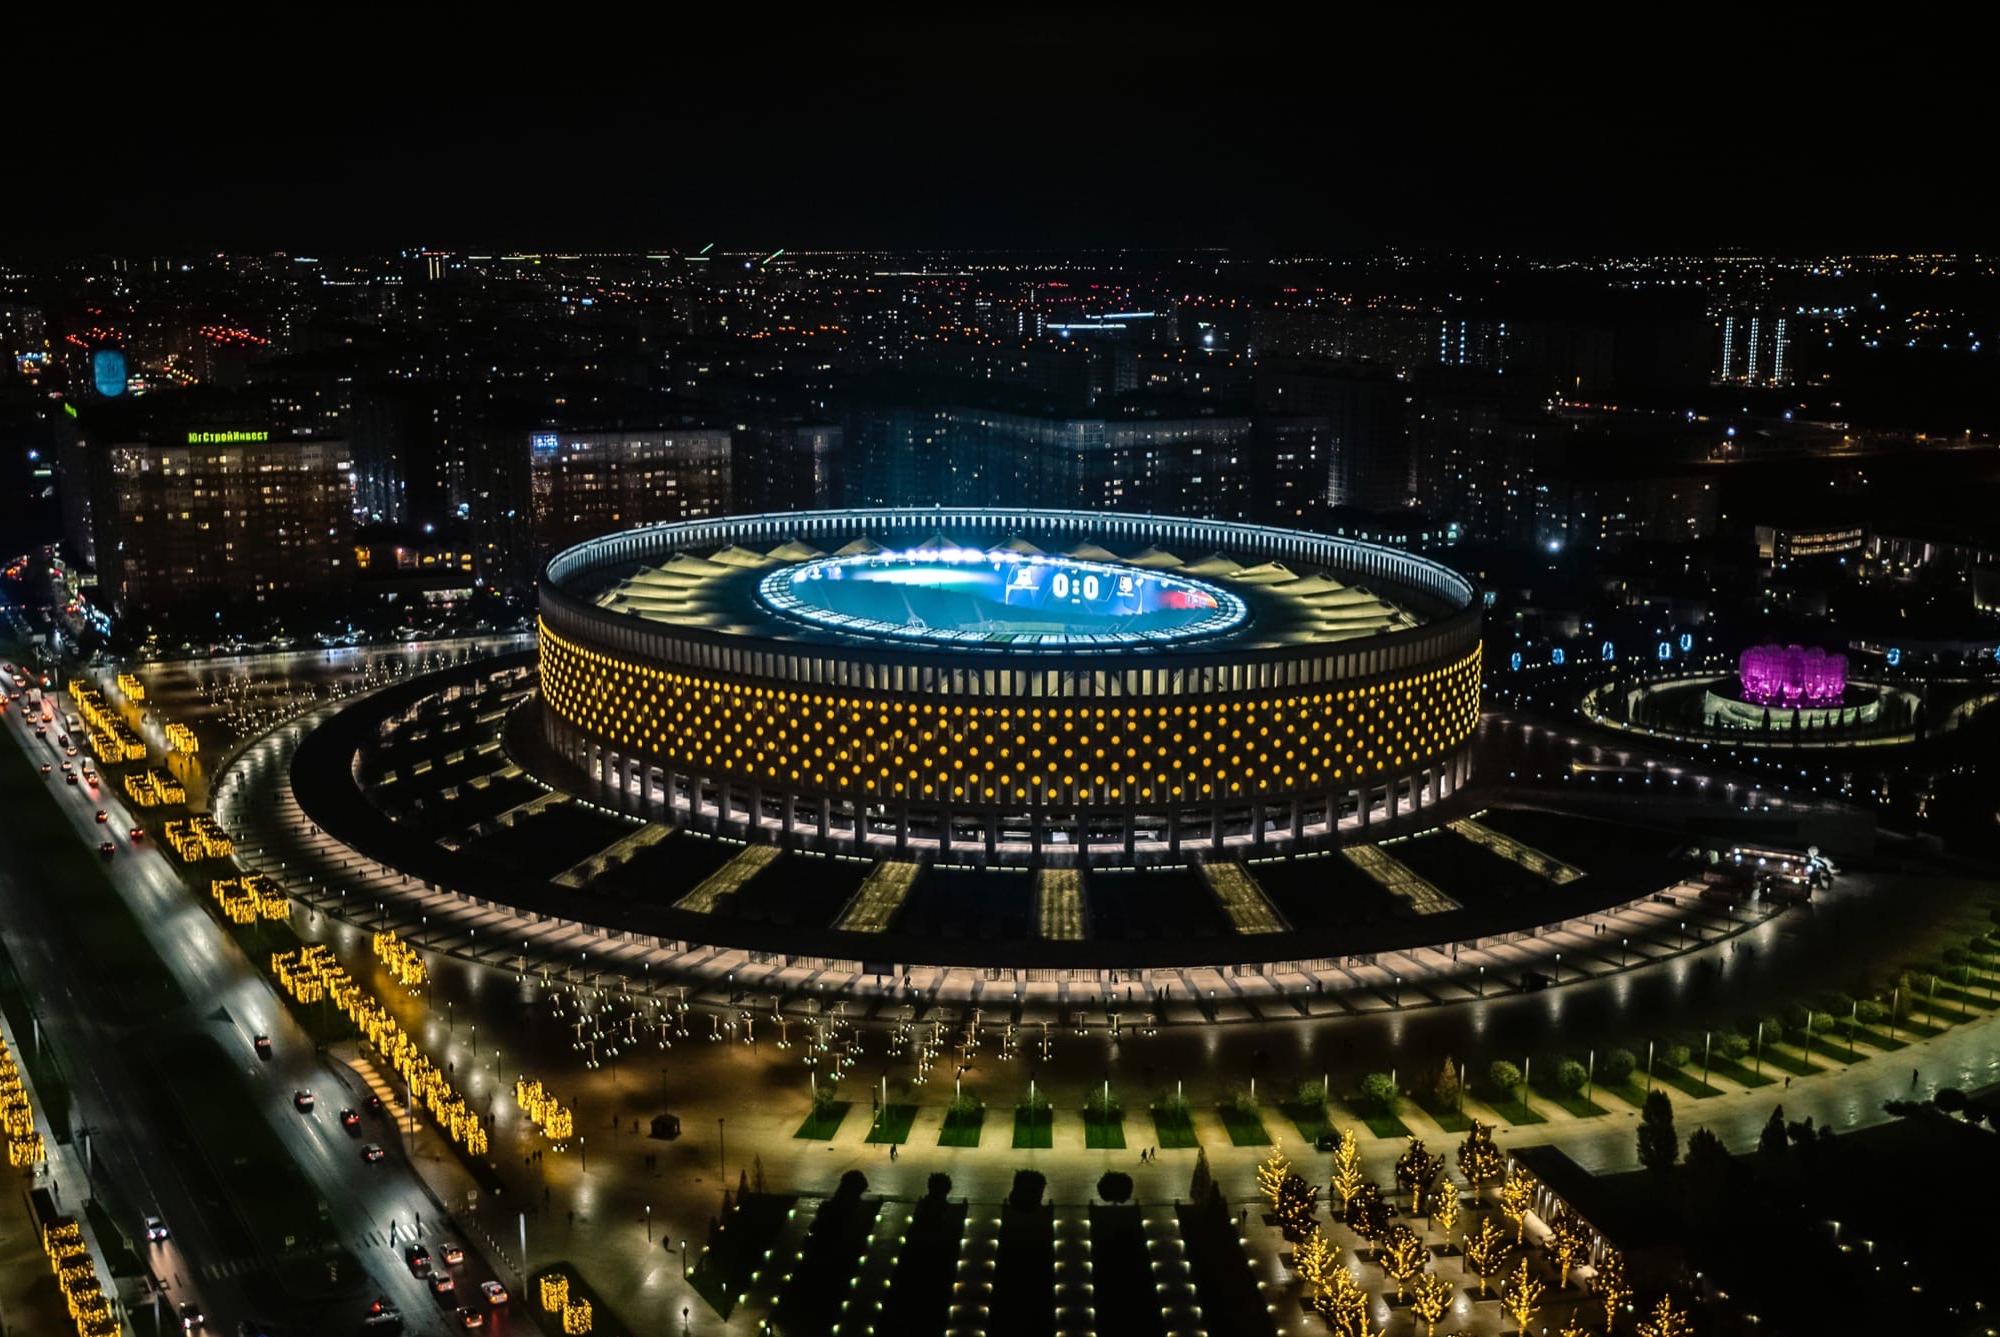 Стадион Галицкого в Краснодаре